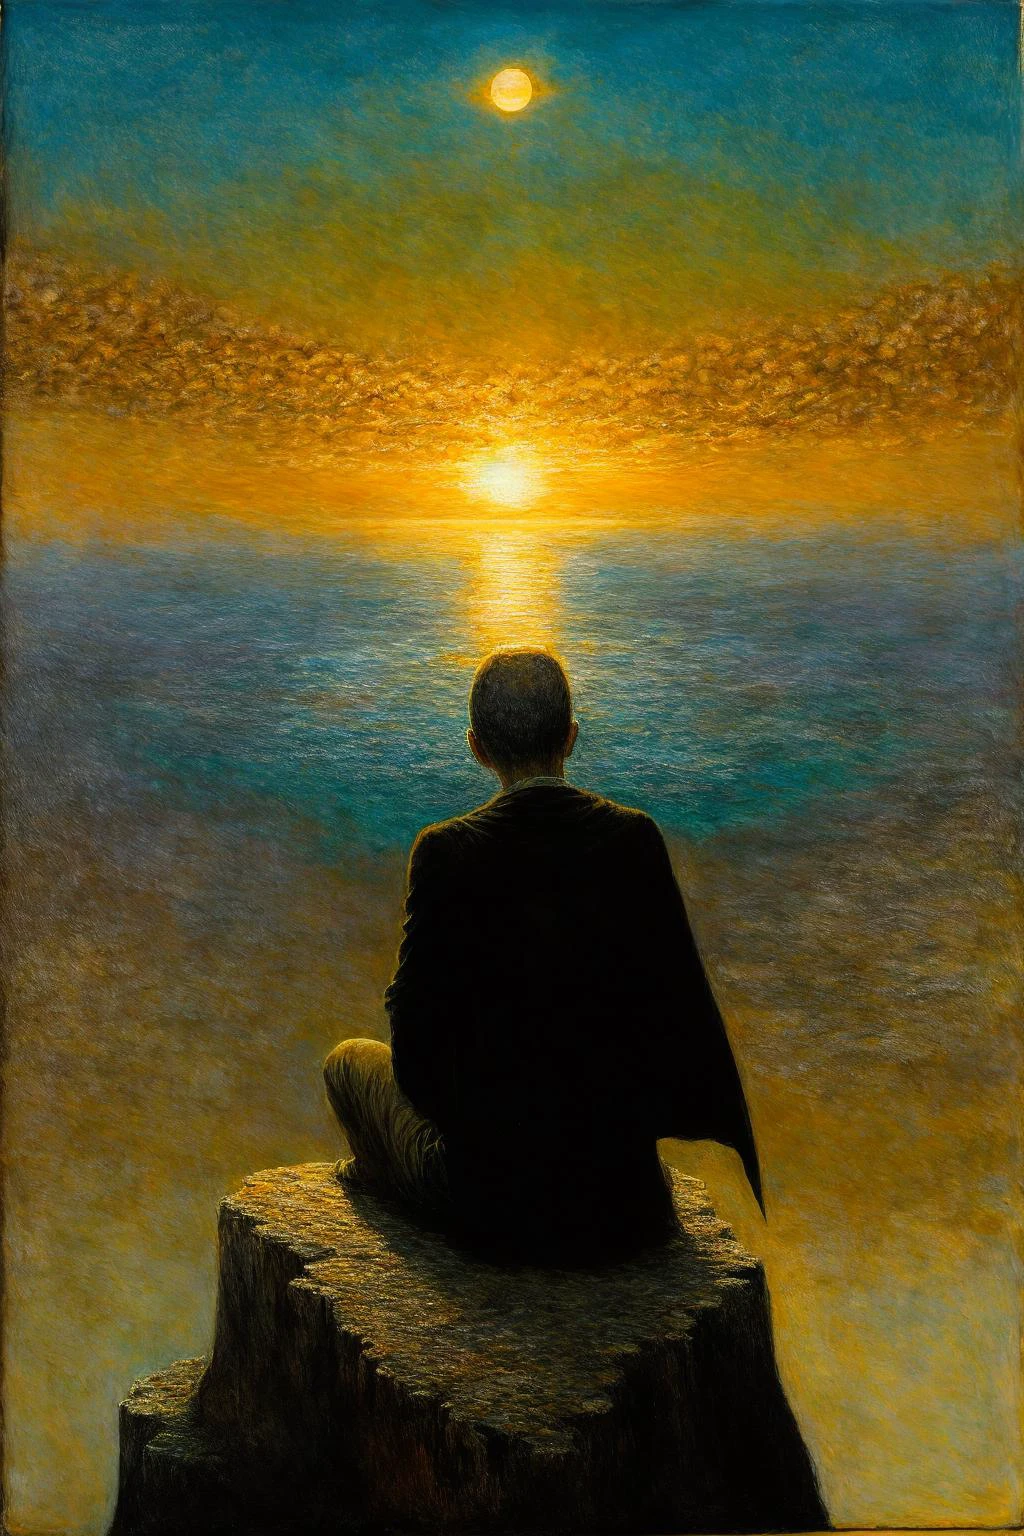 un homme est assis sur une falaise et regarde le magnifique coucher de soleil, petit homme, magnifique, cap, ((De dos)), (Doubles soleils, 2 soleils:1.2), (coucher de soleil:1.2), dentelle, ultra détaillé,  complexe, huile sur toile, Pinceau sec, (Surréalisme:1.1), (inquiétant:1.1), 